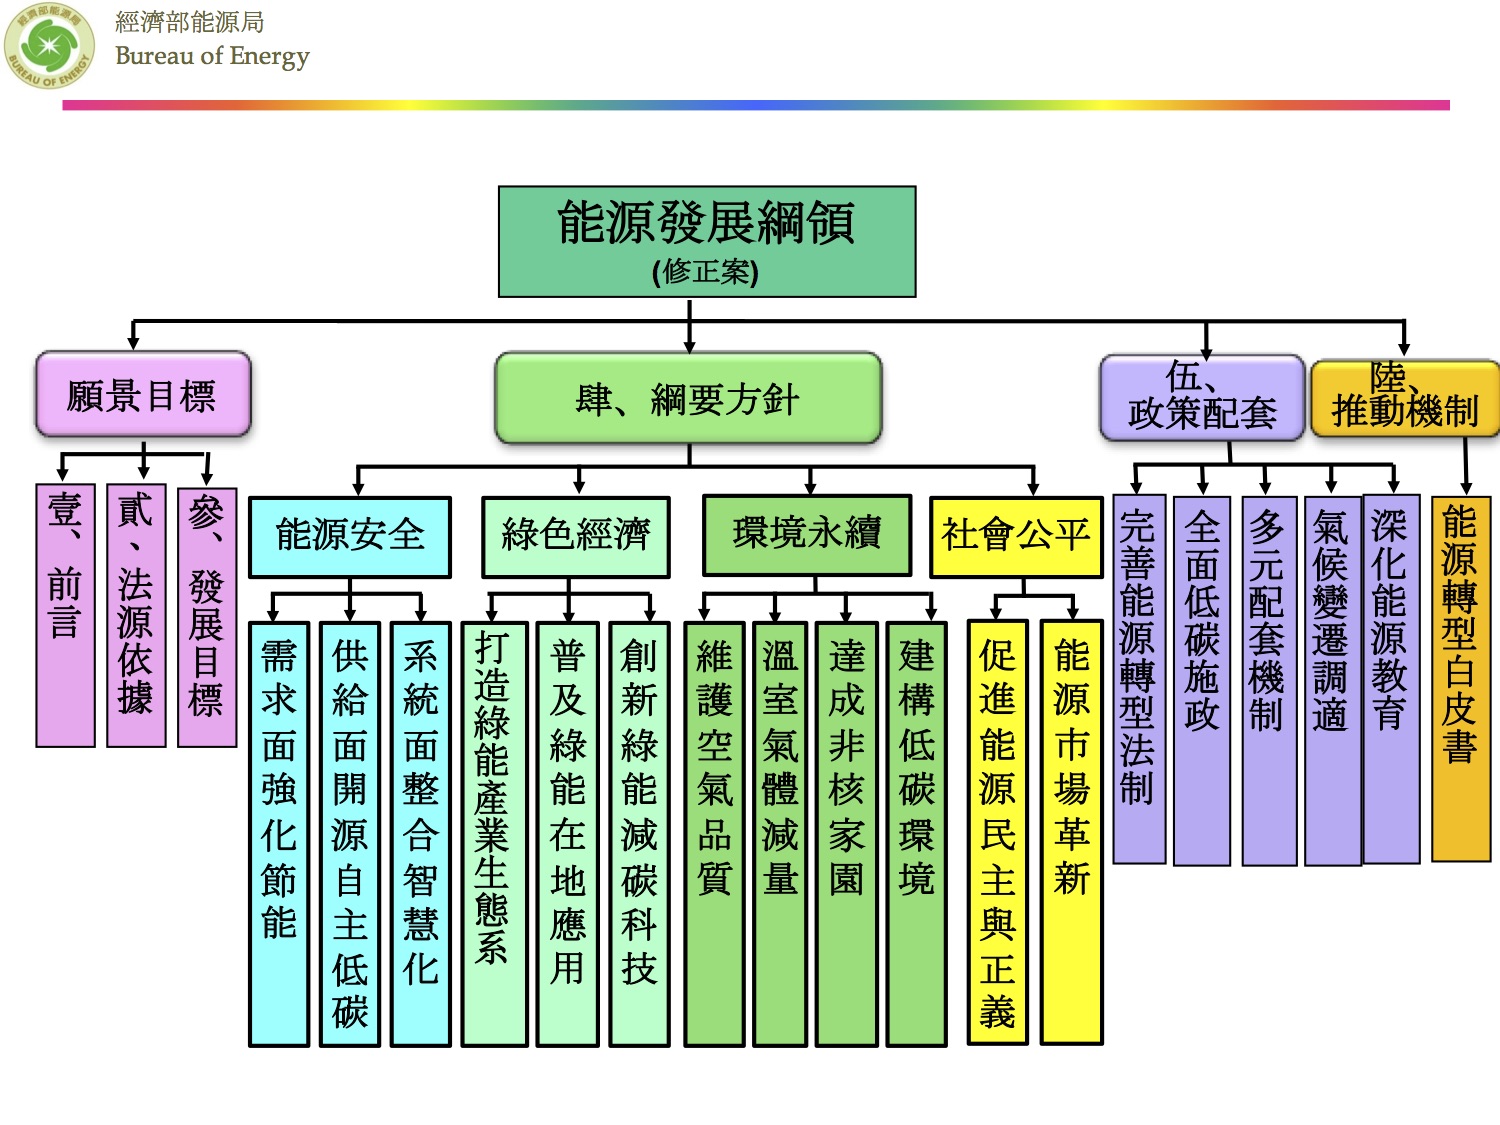 「能源發展綱領」（修正案）從四大面向建構台灣能源轉型